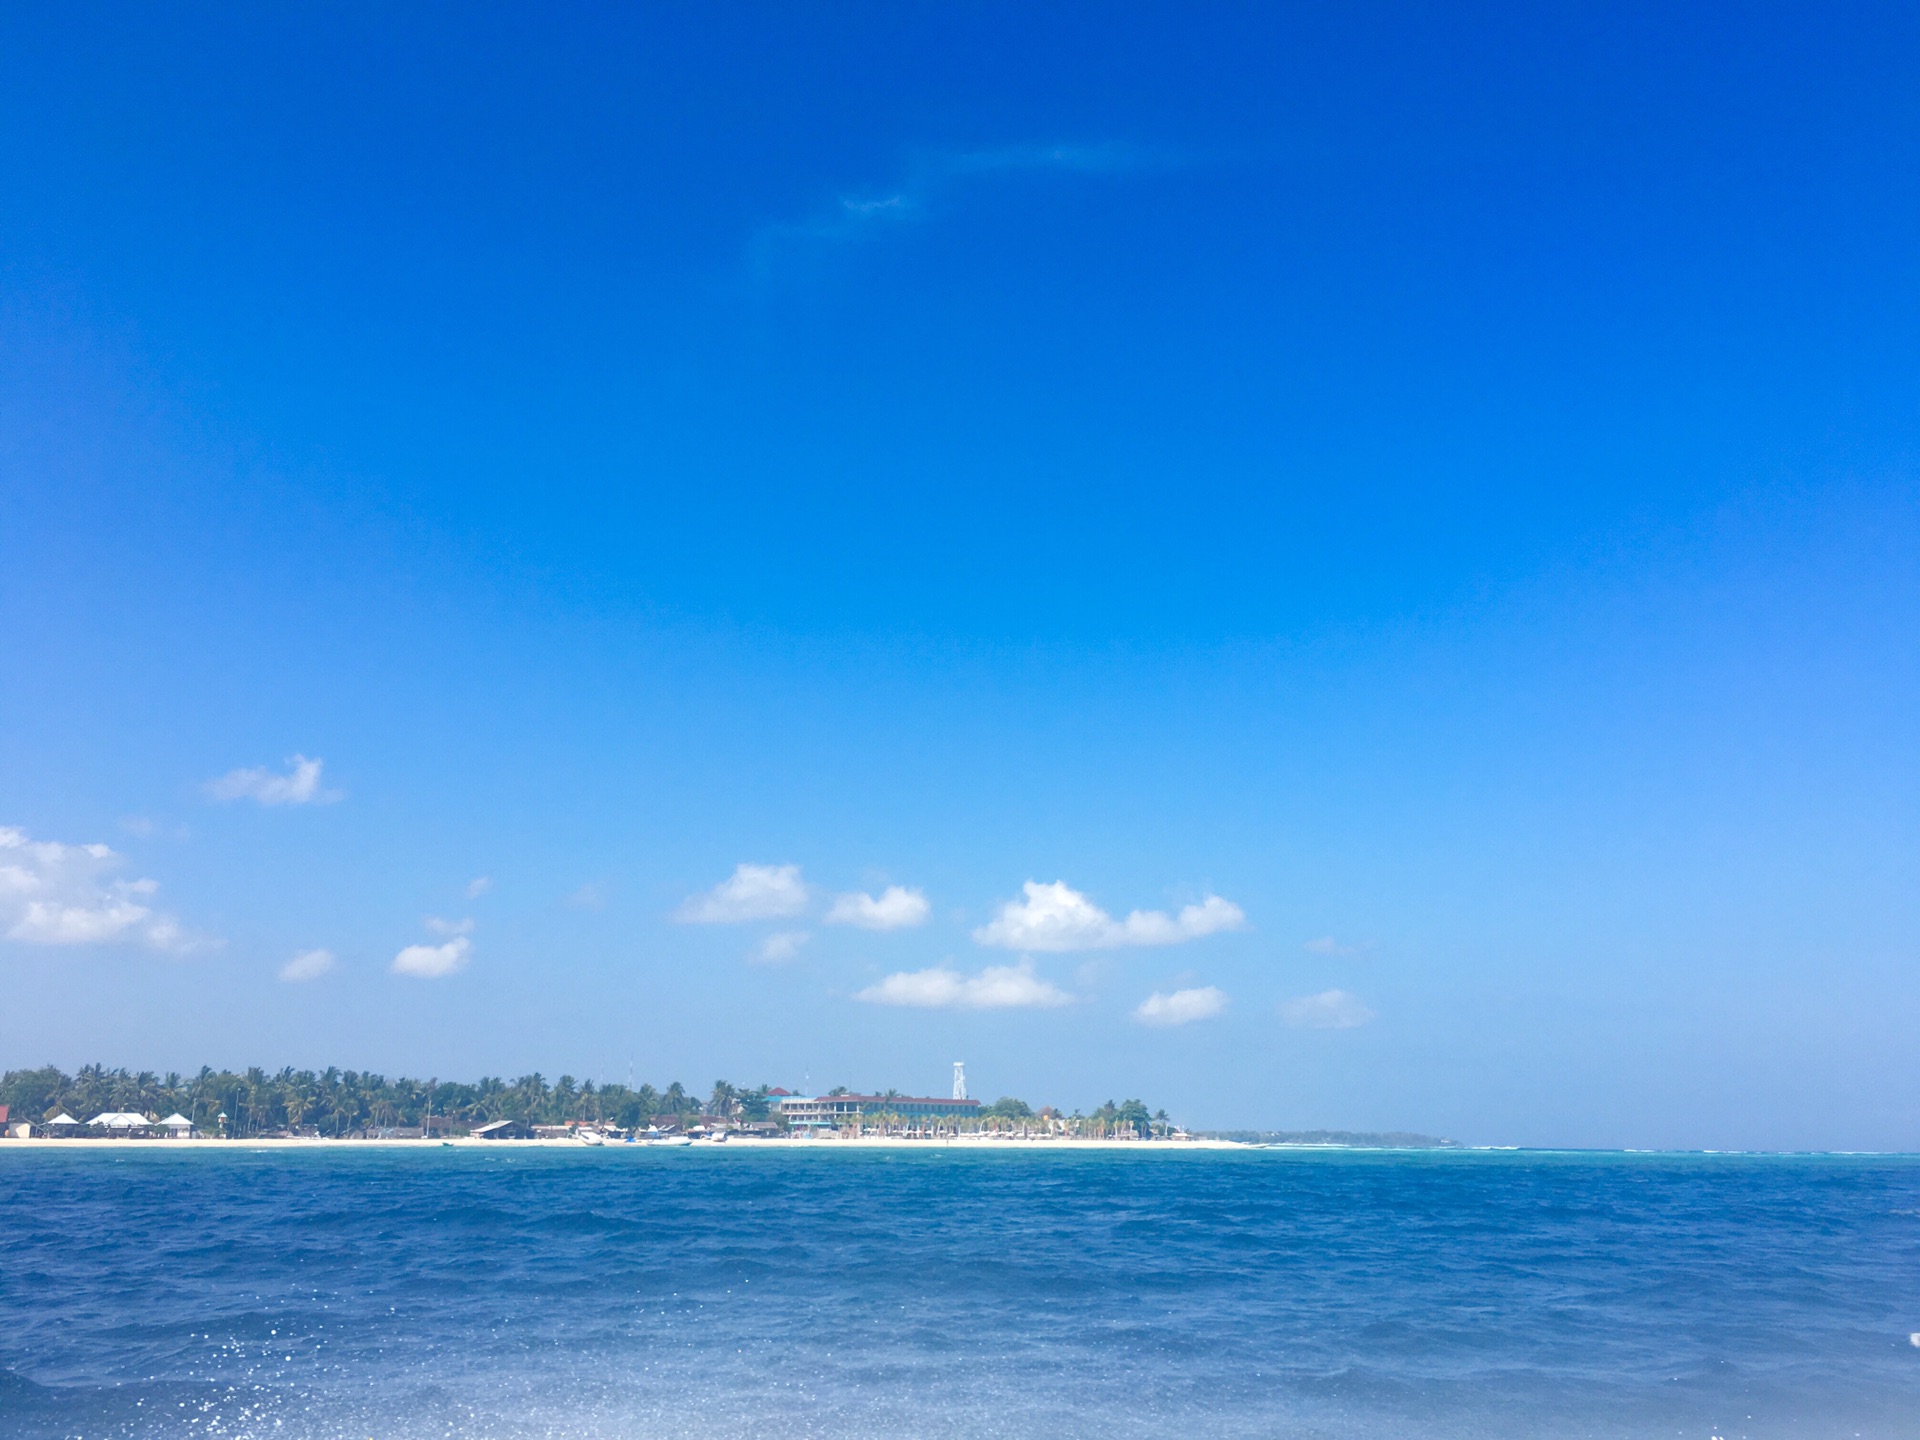 大海呀大海,我爱你!蓝梦岛美极了!蓝蓝的清澈海水,完全清晰可见!